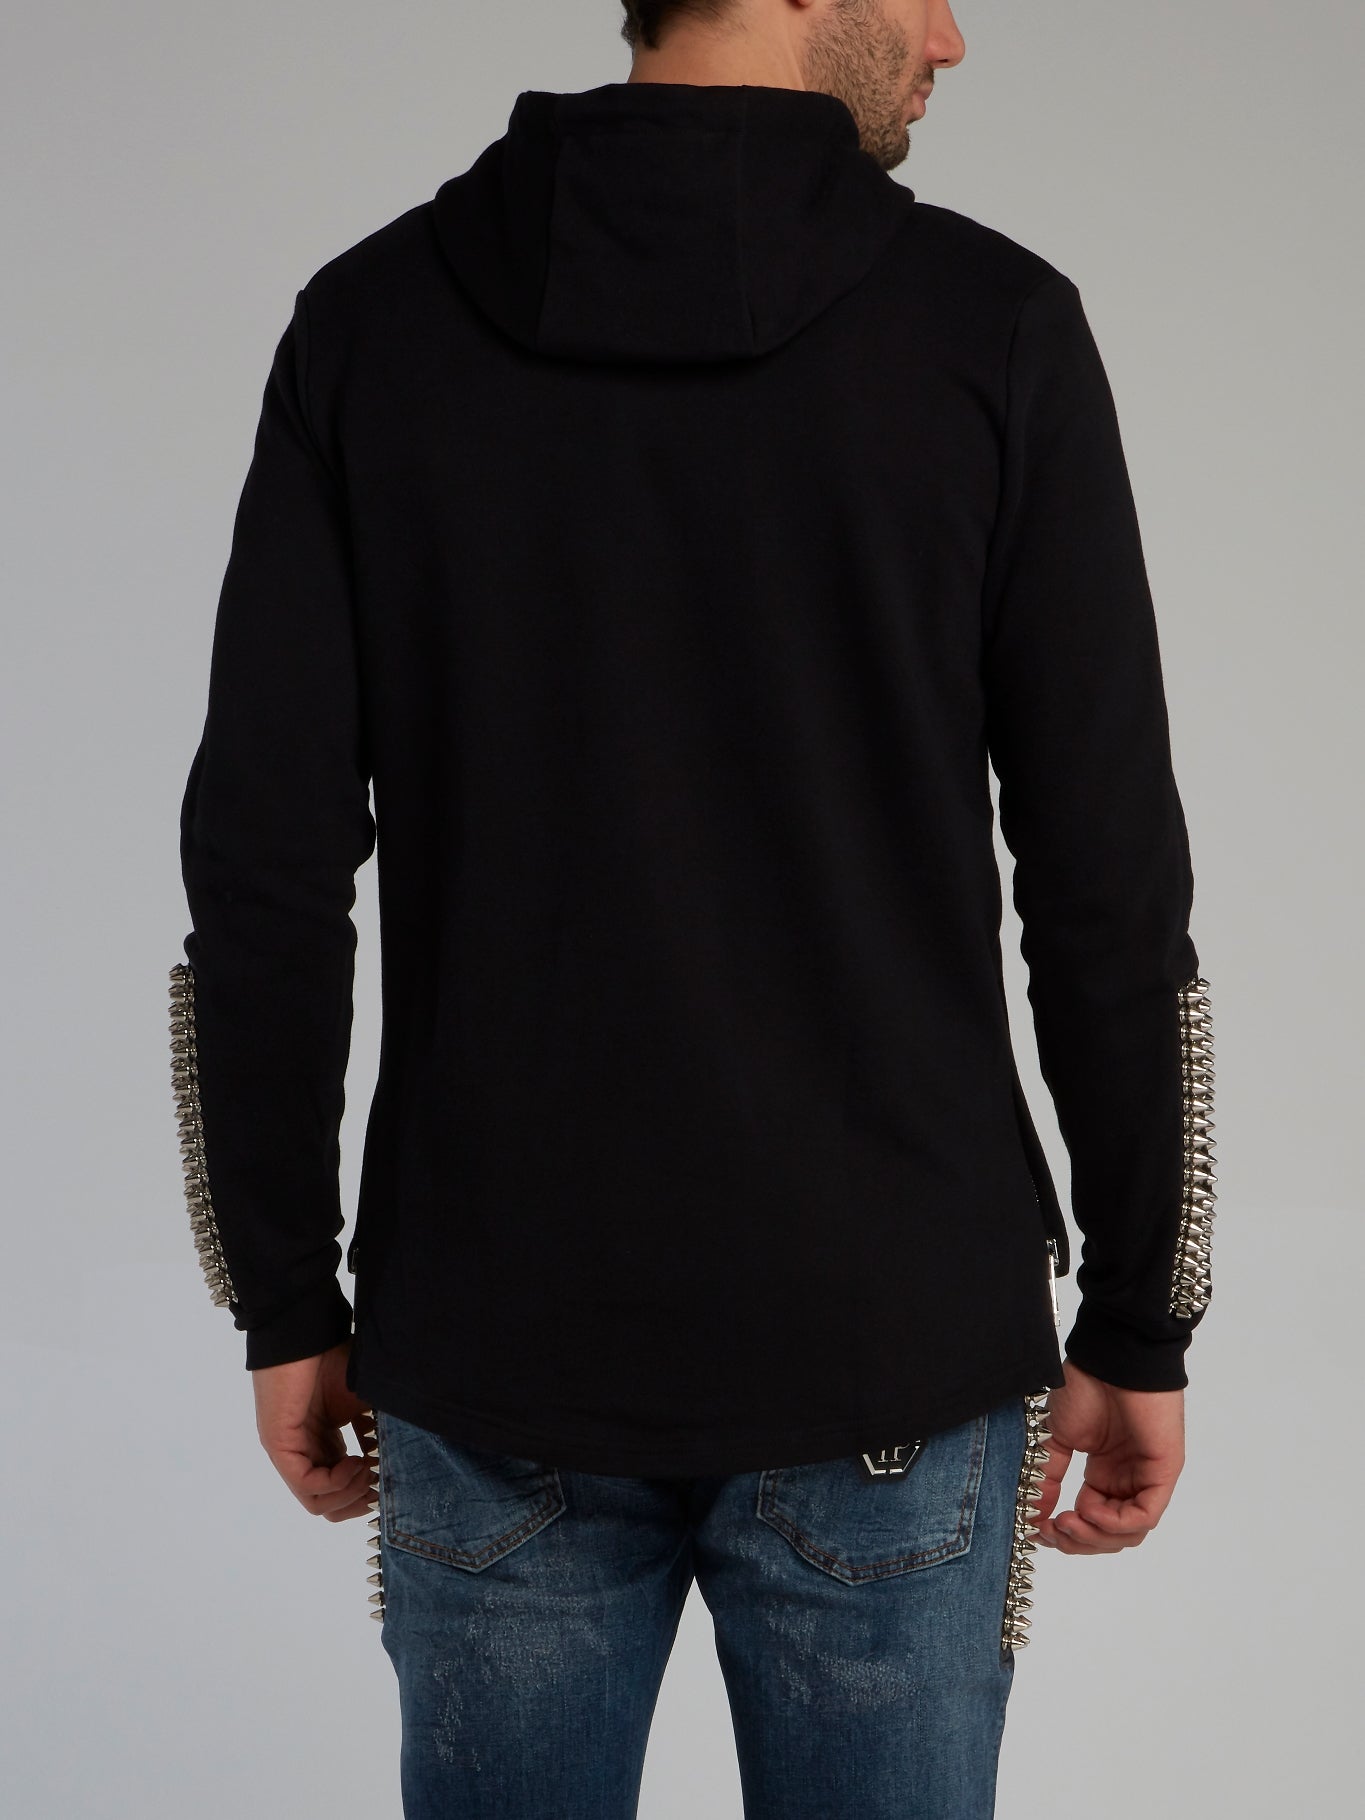 Black Spike Studded Sweatshirt